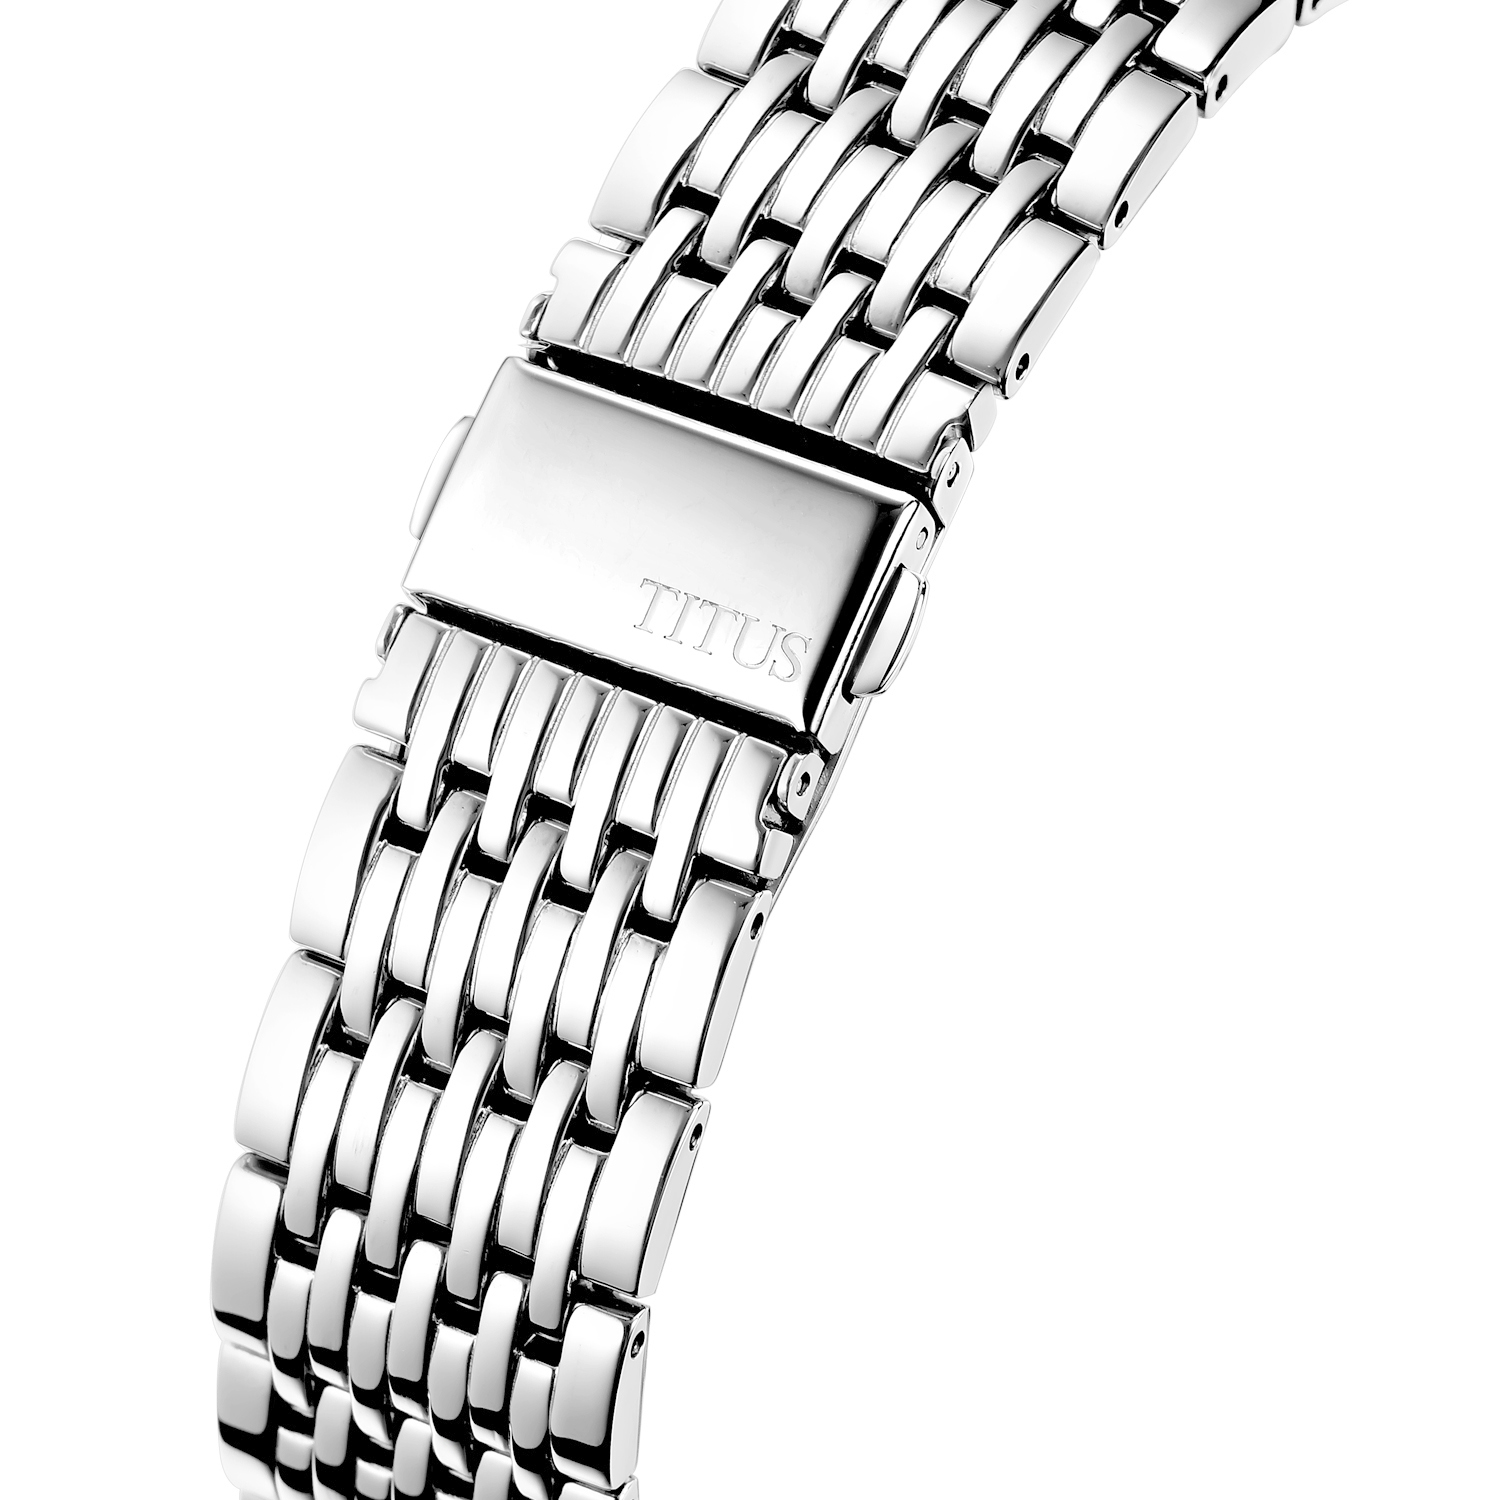 นาฬิกาผู้ชาย Interlude มัลติฟังก์ชัน ระบบควอตซ์ สายสแตนเลสสตีล ขนาดตัวเรือน 41 มม. (W06-02932-003)